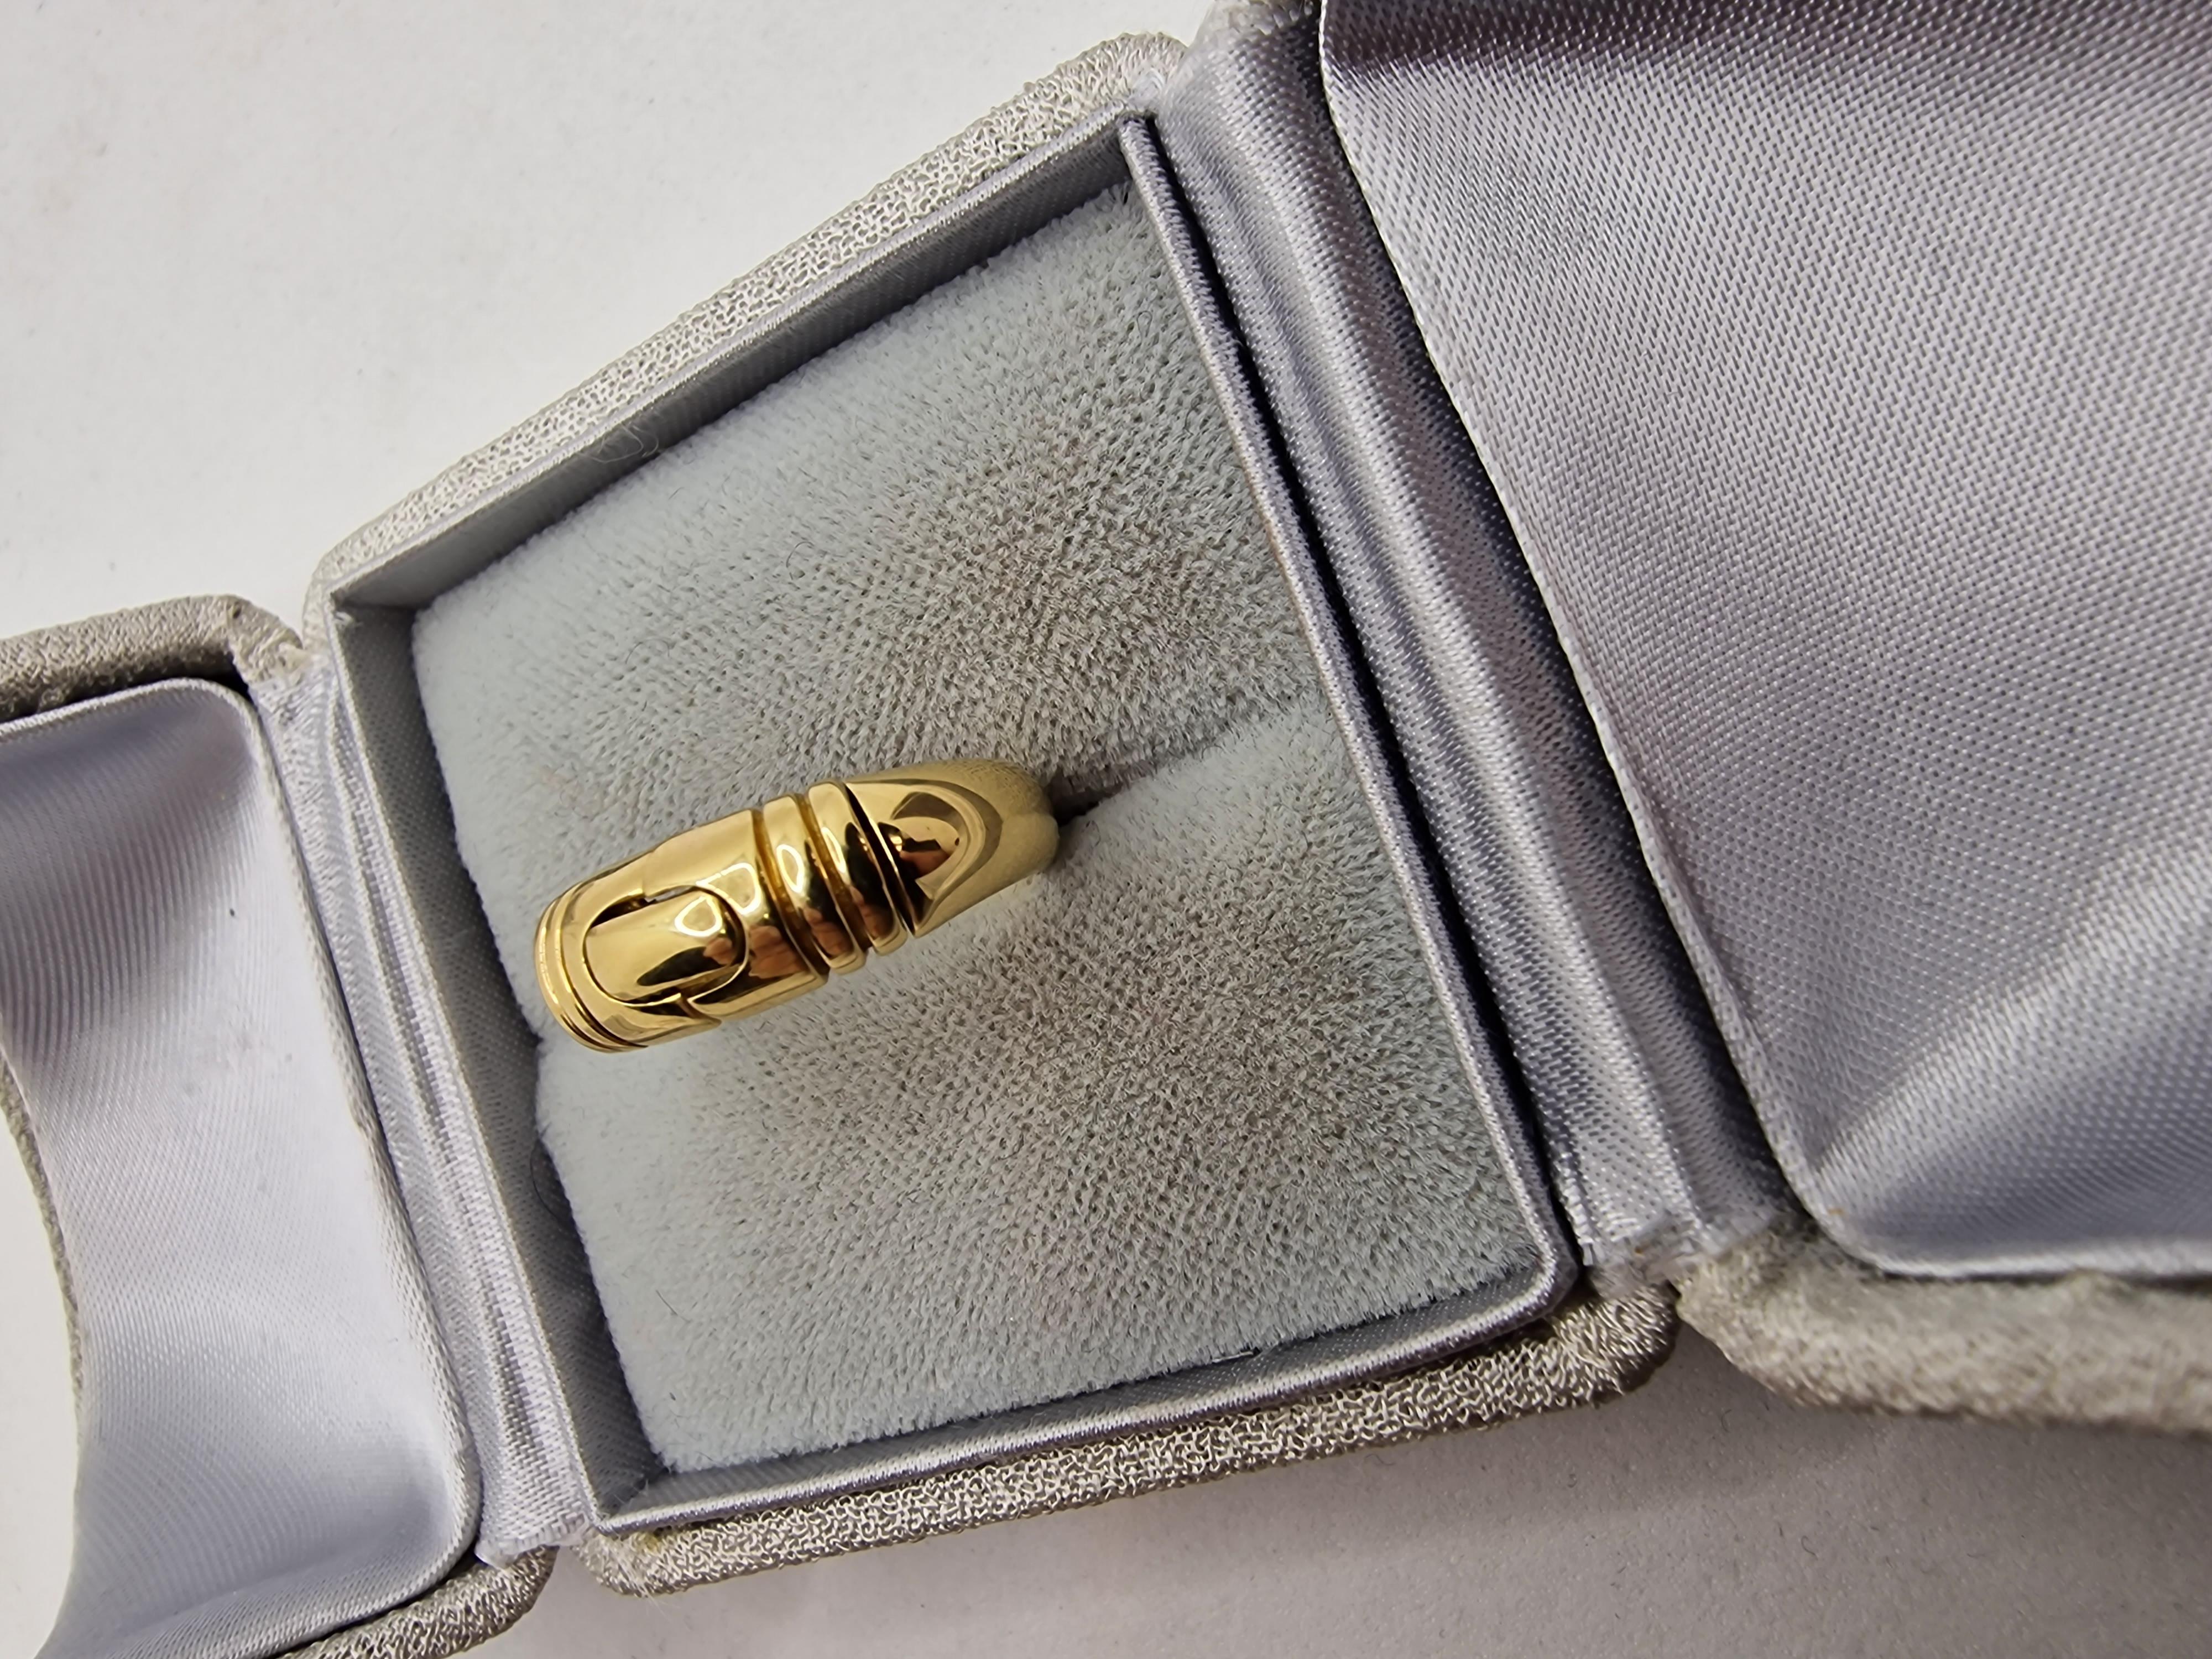 Bvlgari Spiga 18kt yellow gold ring.